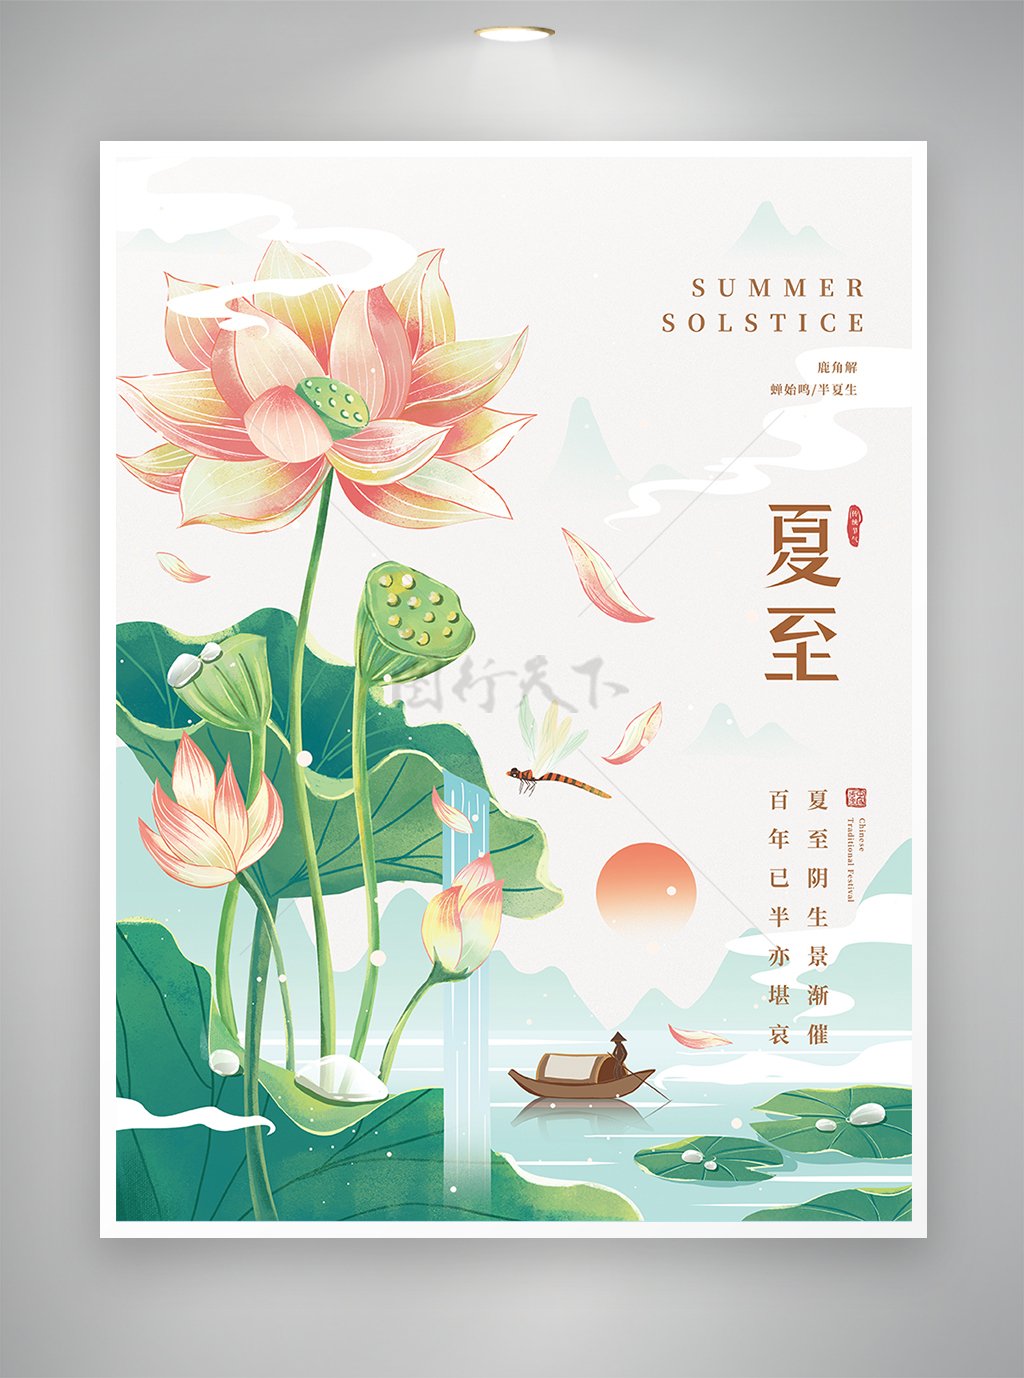 中国传统节气夏至节气海报